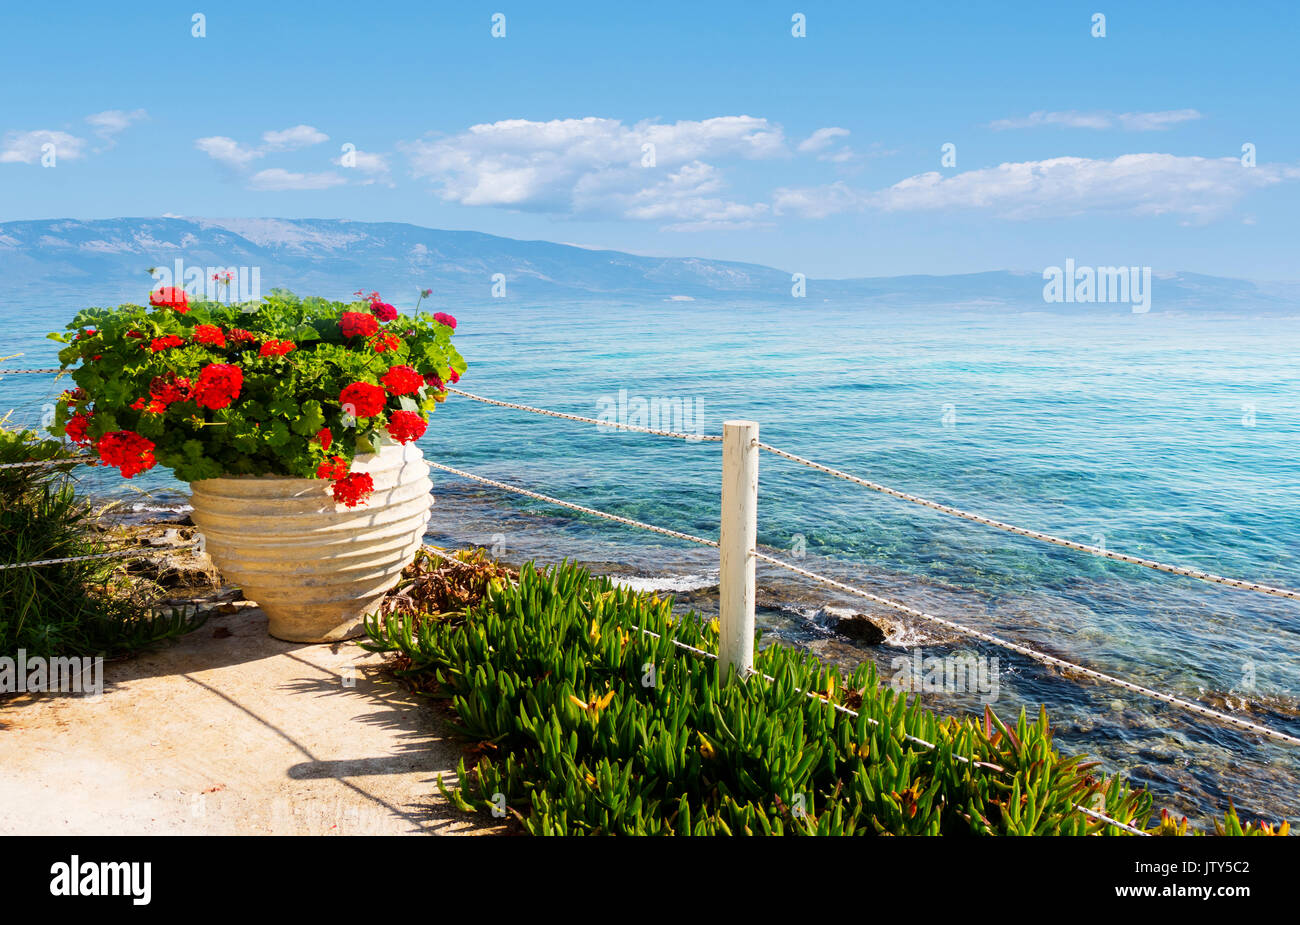 Une vue magnifique sur les montagnes dans la mer Ionienne, au petit matin sur l'île de Zakynthos Banque D'Images